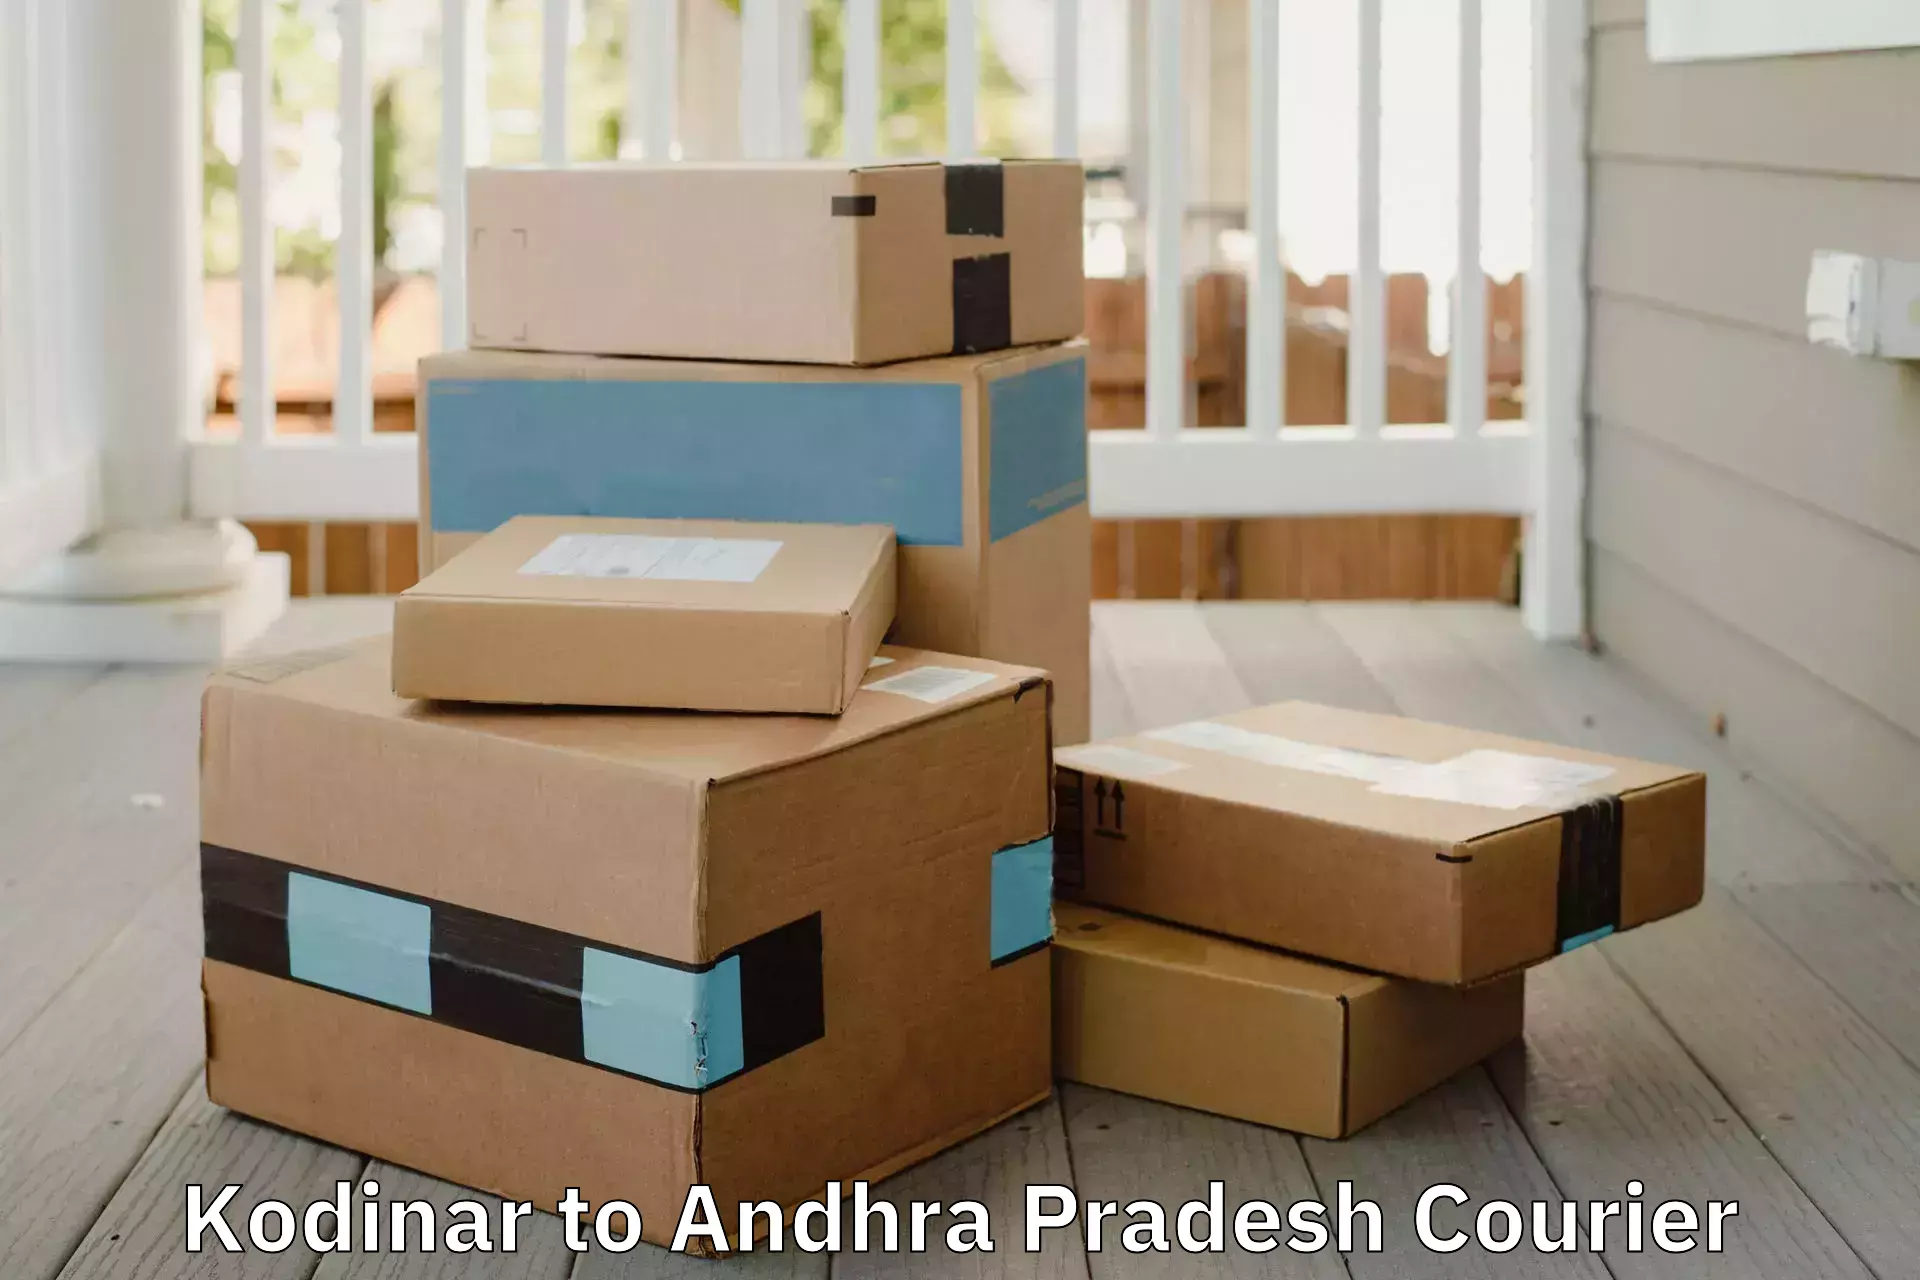 Efficient household moving Kodinar to Vijayawada